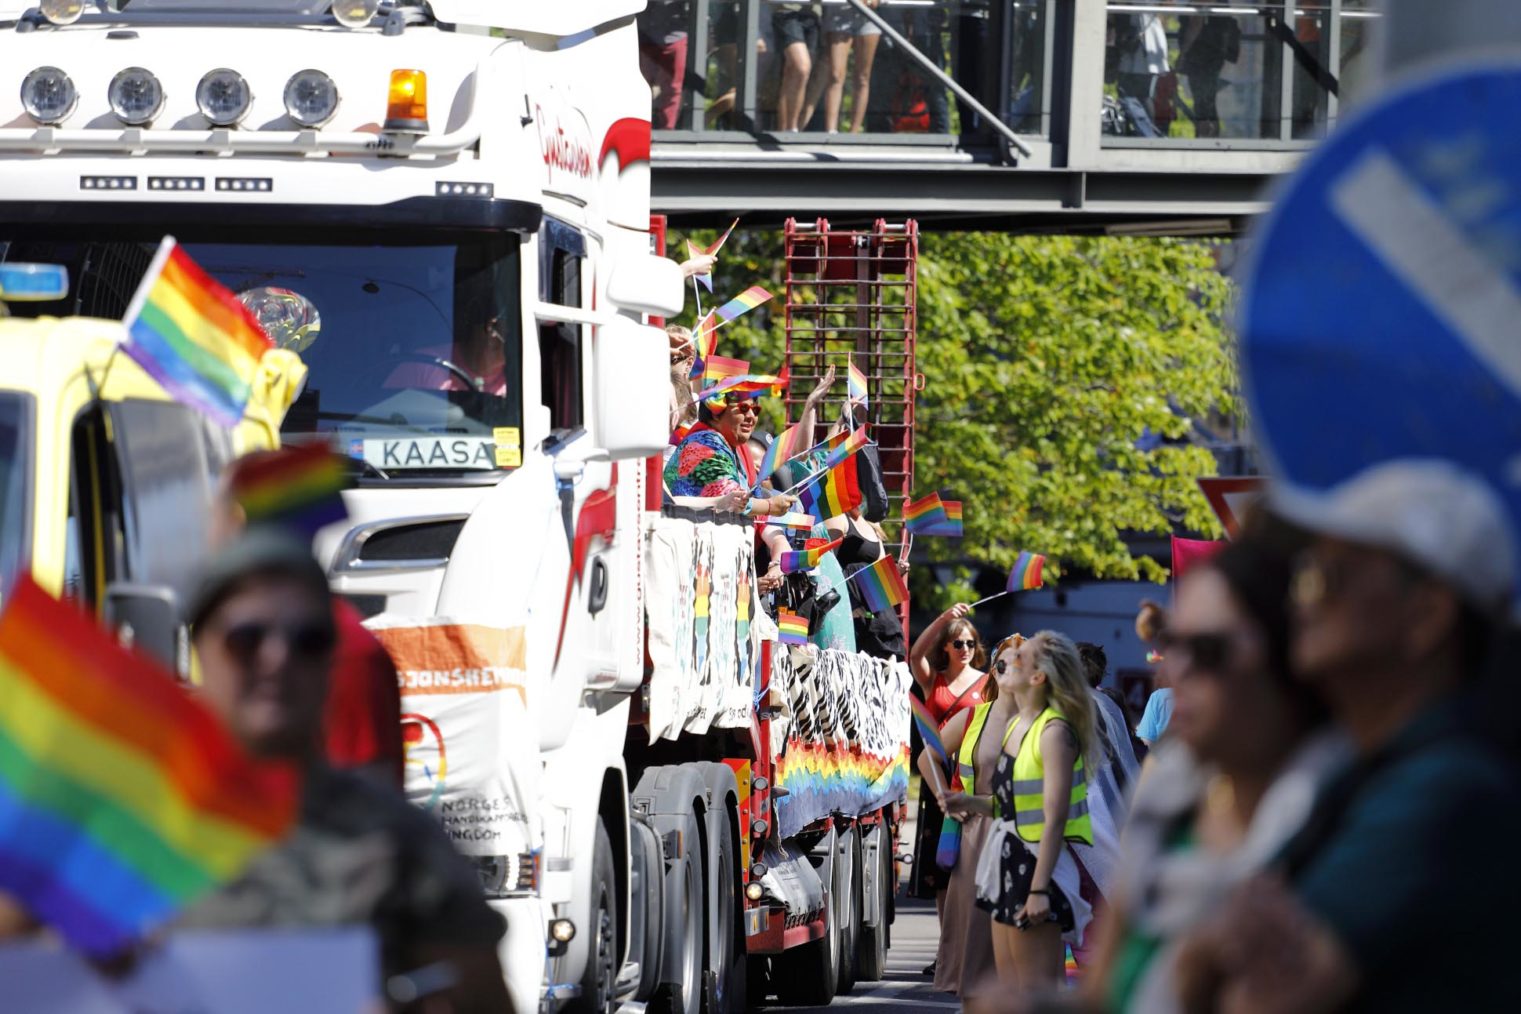 Bilde av lastebil gjennom folkehav. På planet sitter en masse mennesker og vinker med regnbueflagg.